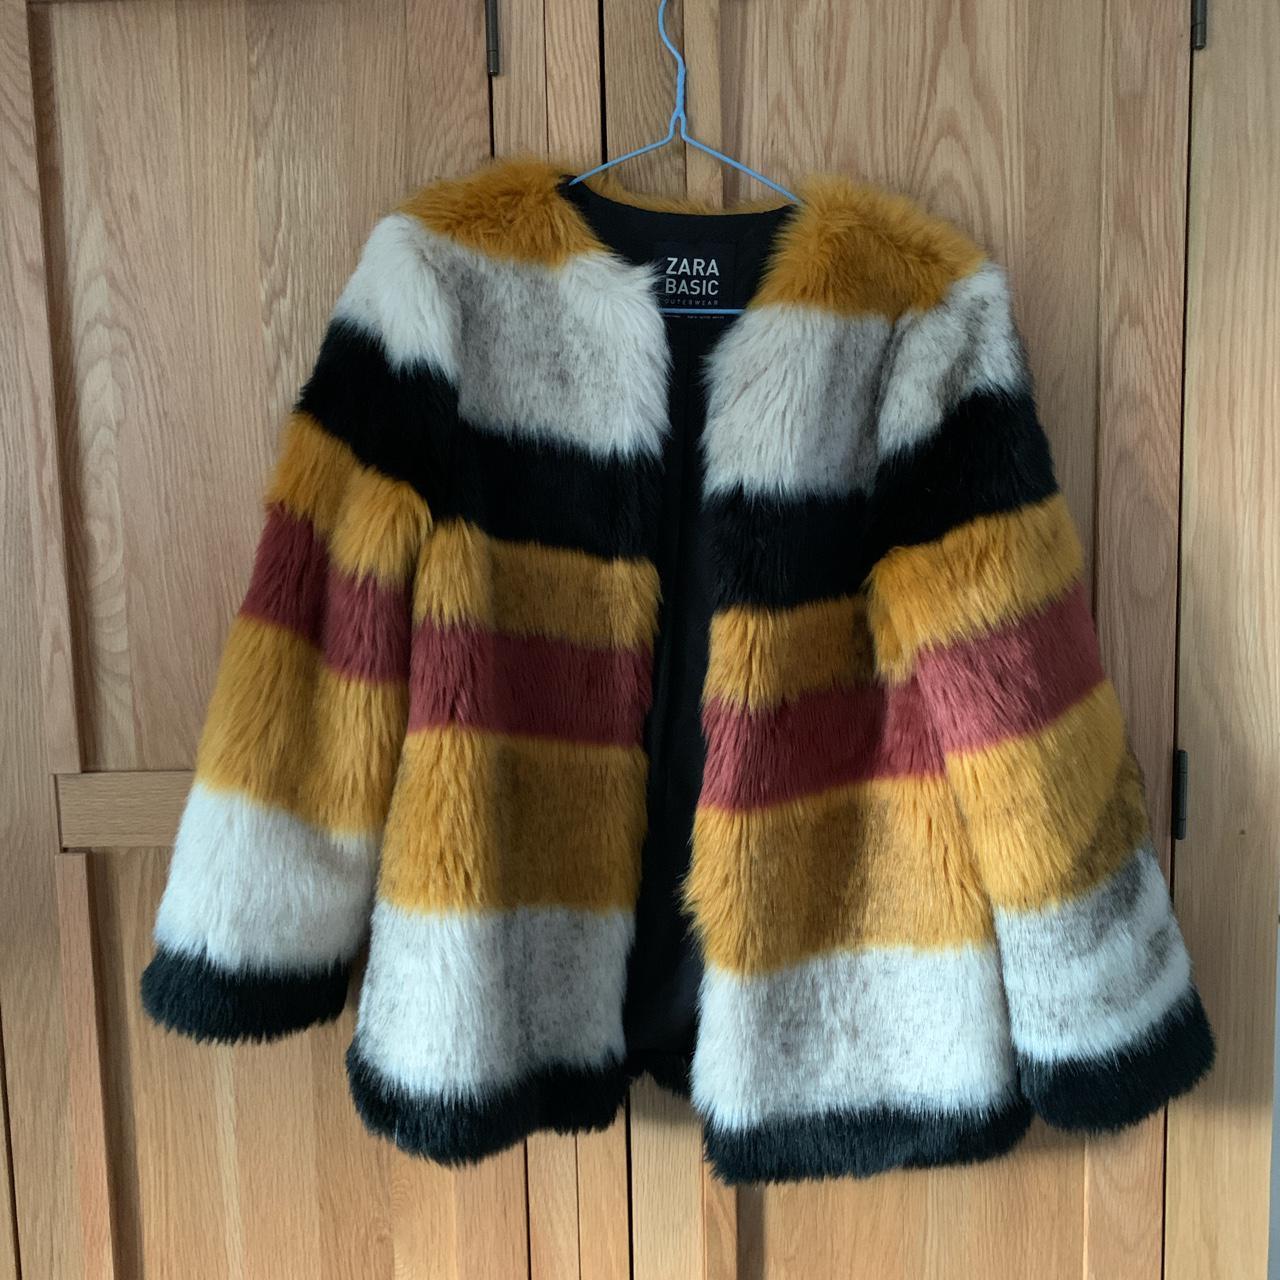 Zara basic striped faux fur jacket. Fully lined... - Depop